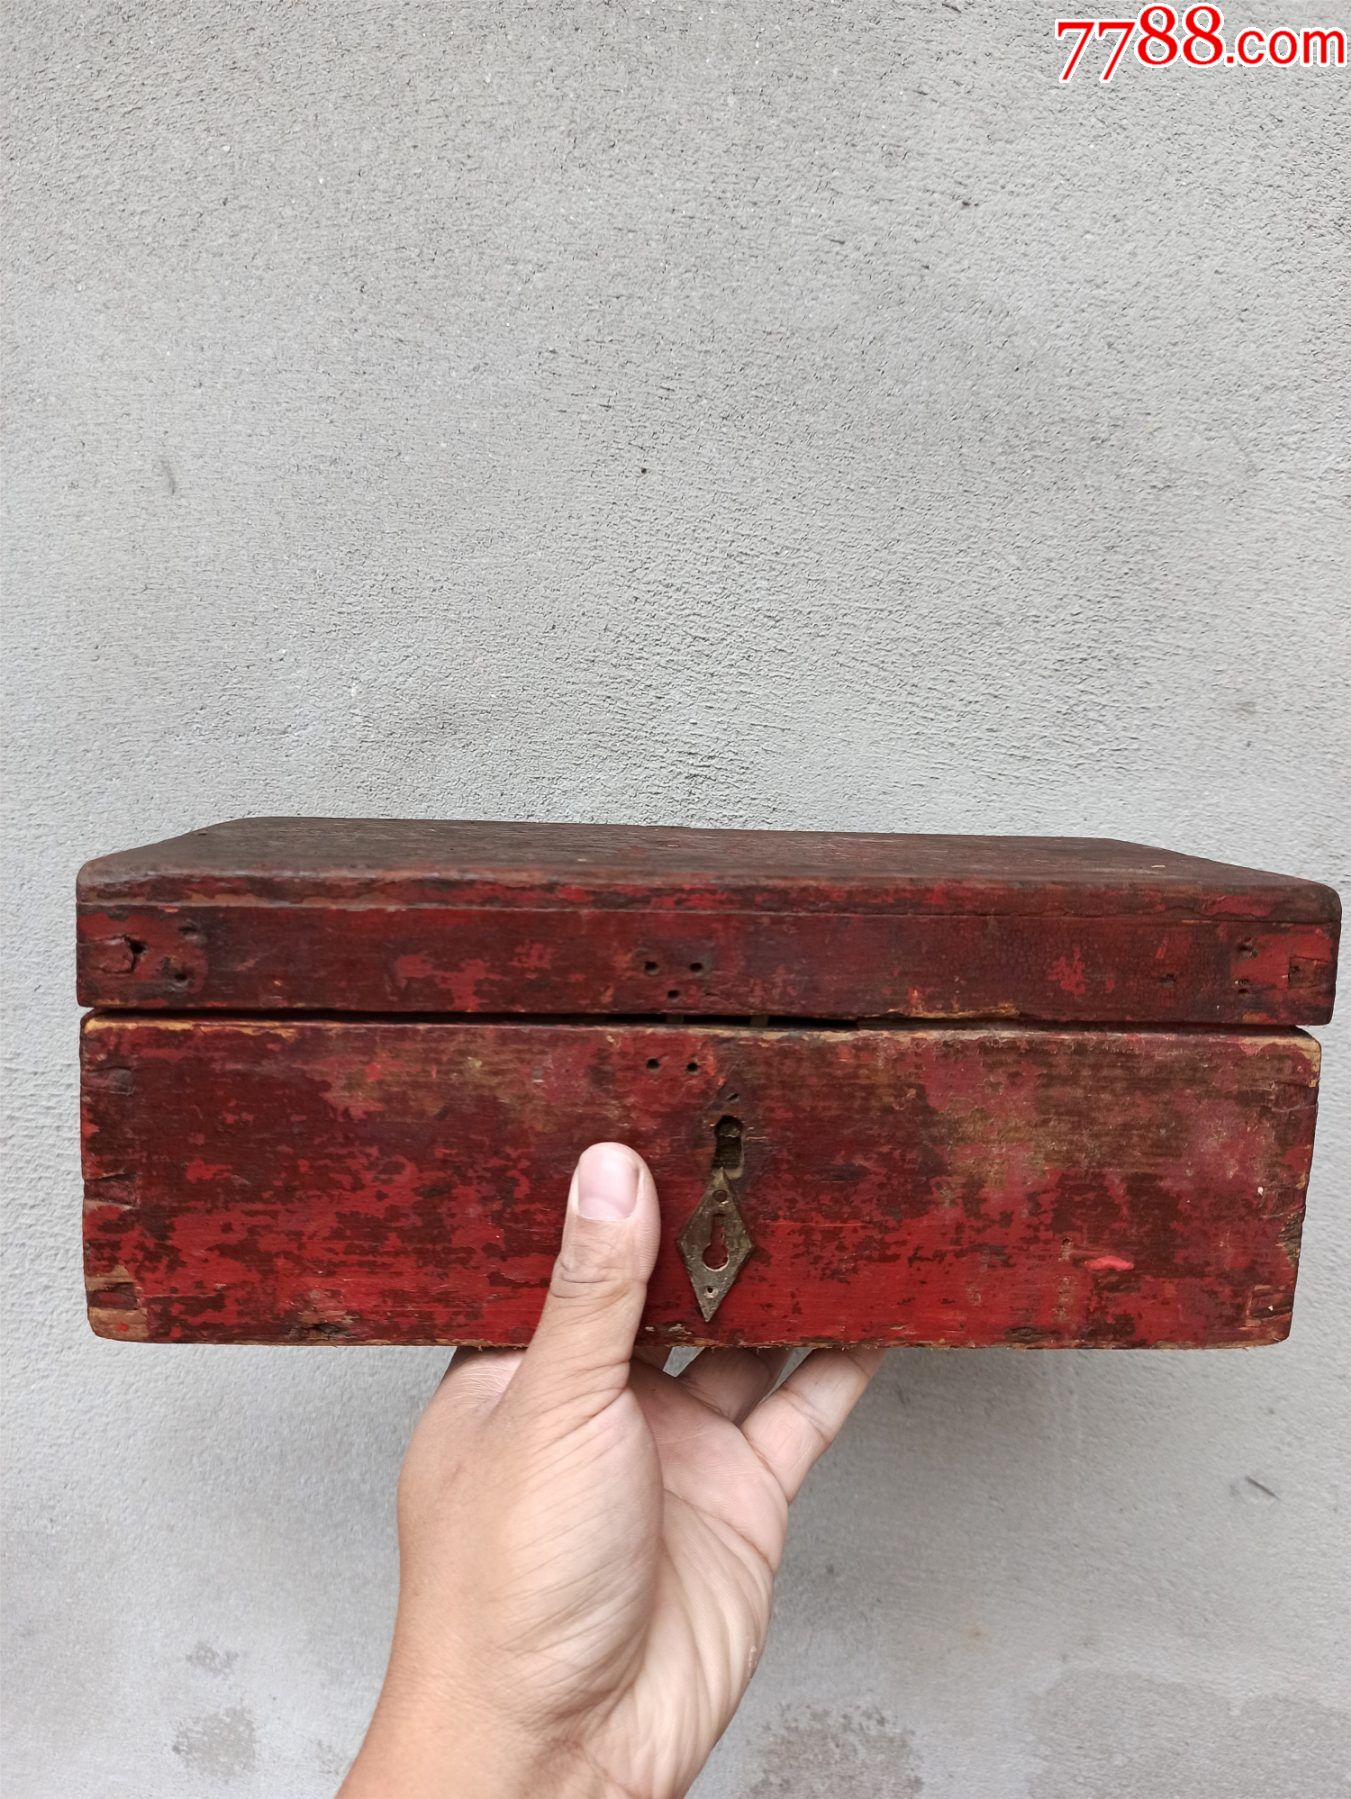 包老民国时期的木头盒子,品相如图所示